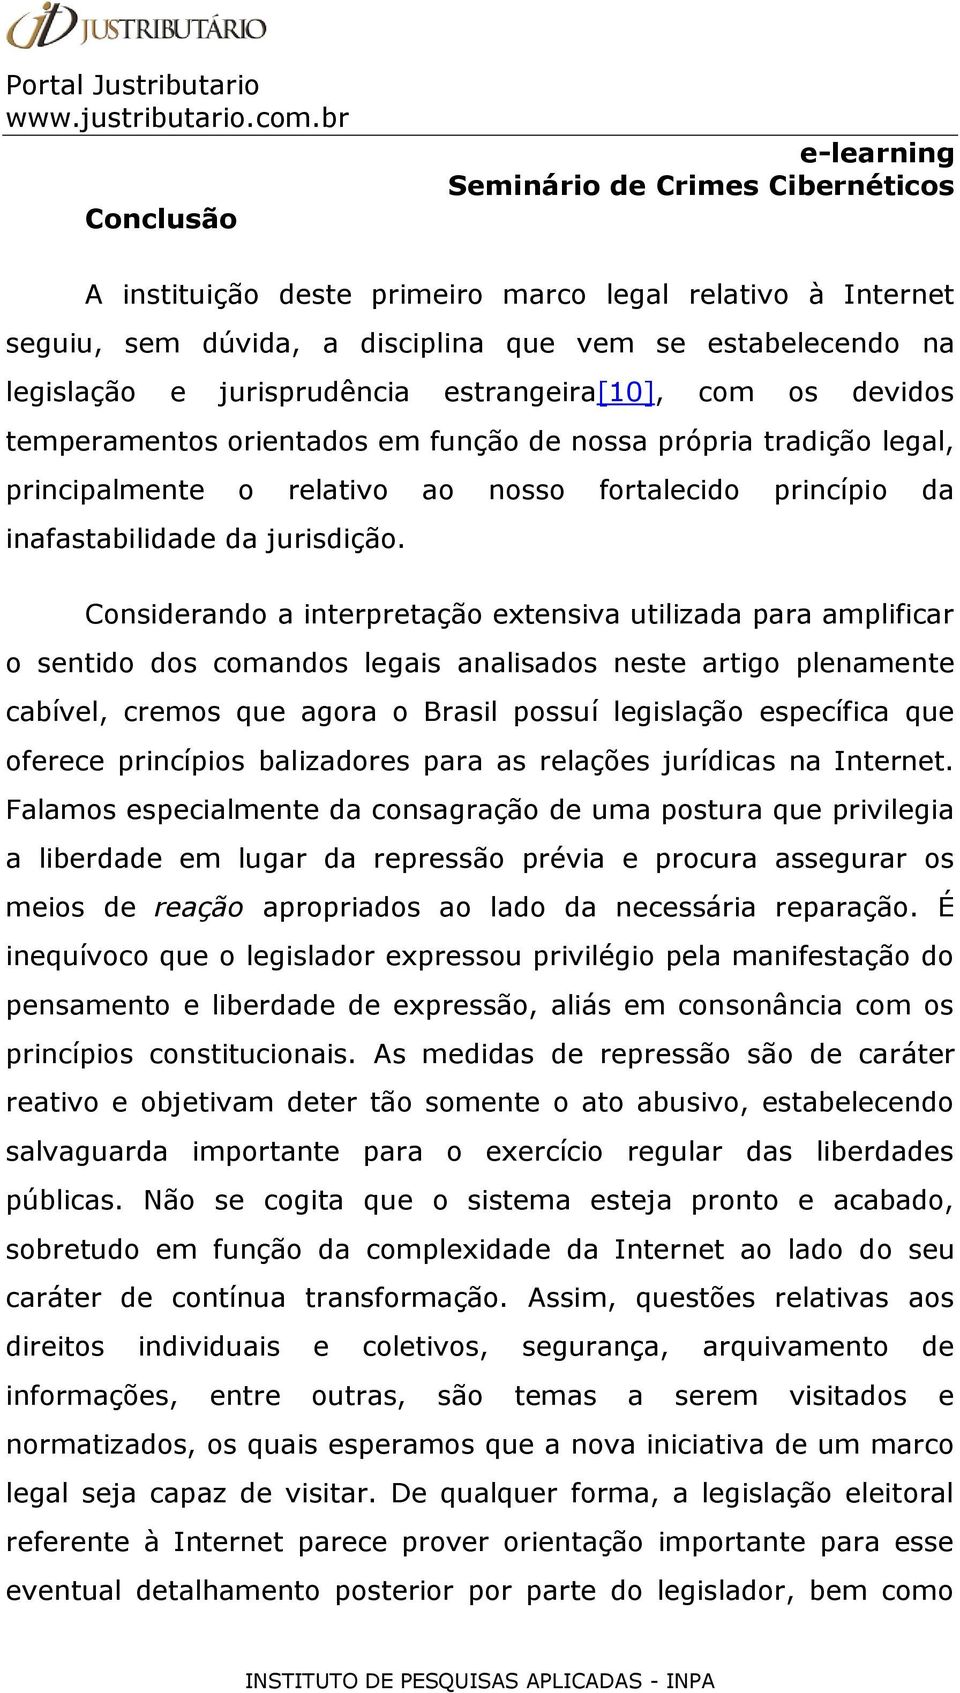 Considerando a interpretação extensiva utilizada para amplificar o sentido dos comandos legais analisados neste artigo plenamente cabível, cremos que agora o Brasil possuí legislação específica que